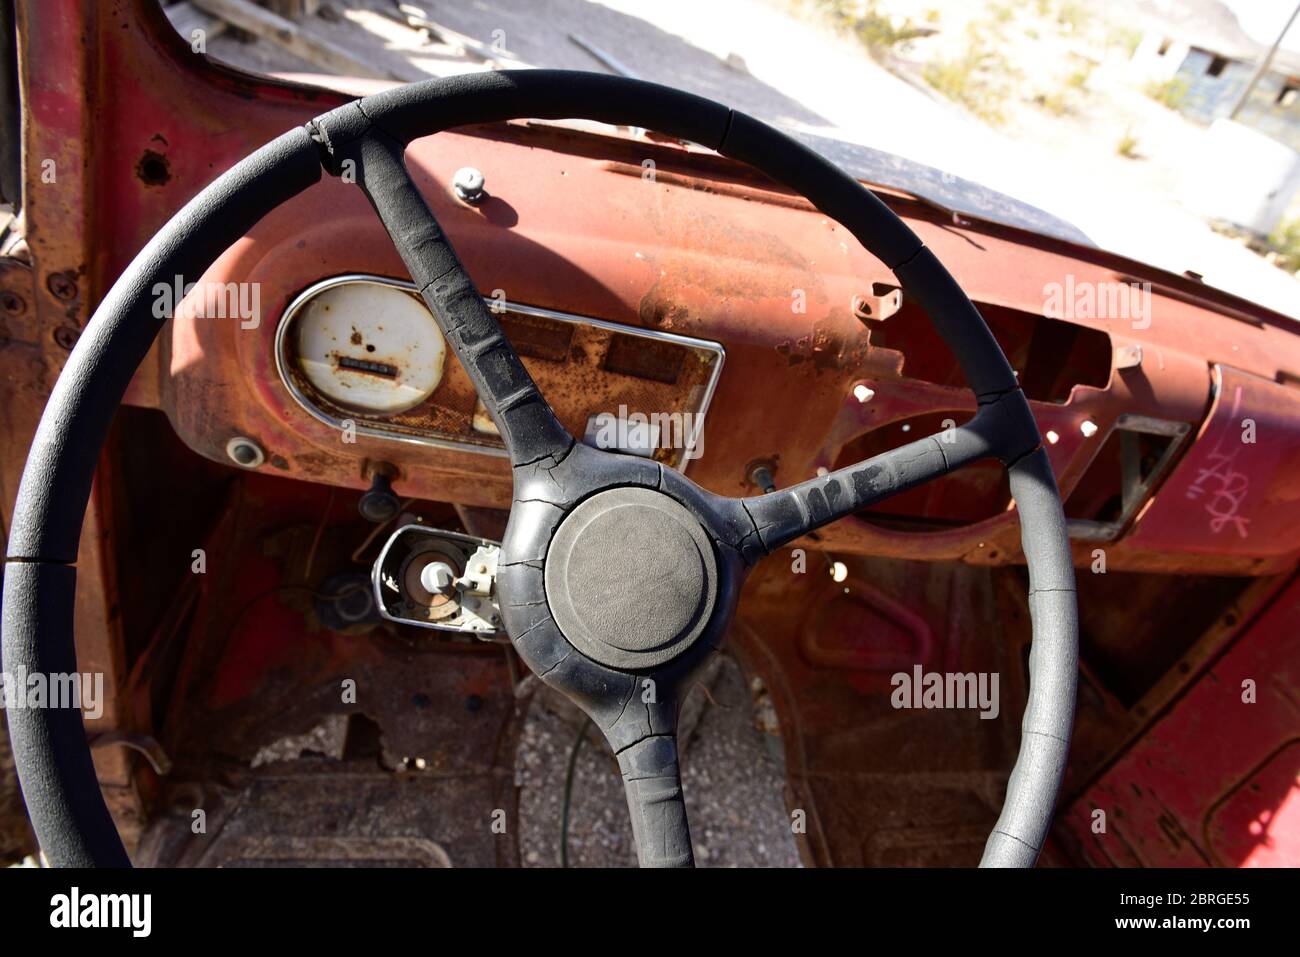 Rhyolite Ghost Town, Beatty Nevada - verrostete antike Automobile, Innenausstattung. Stockfoto